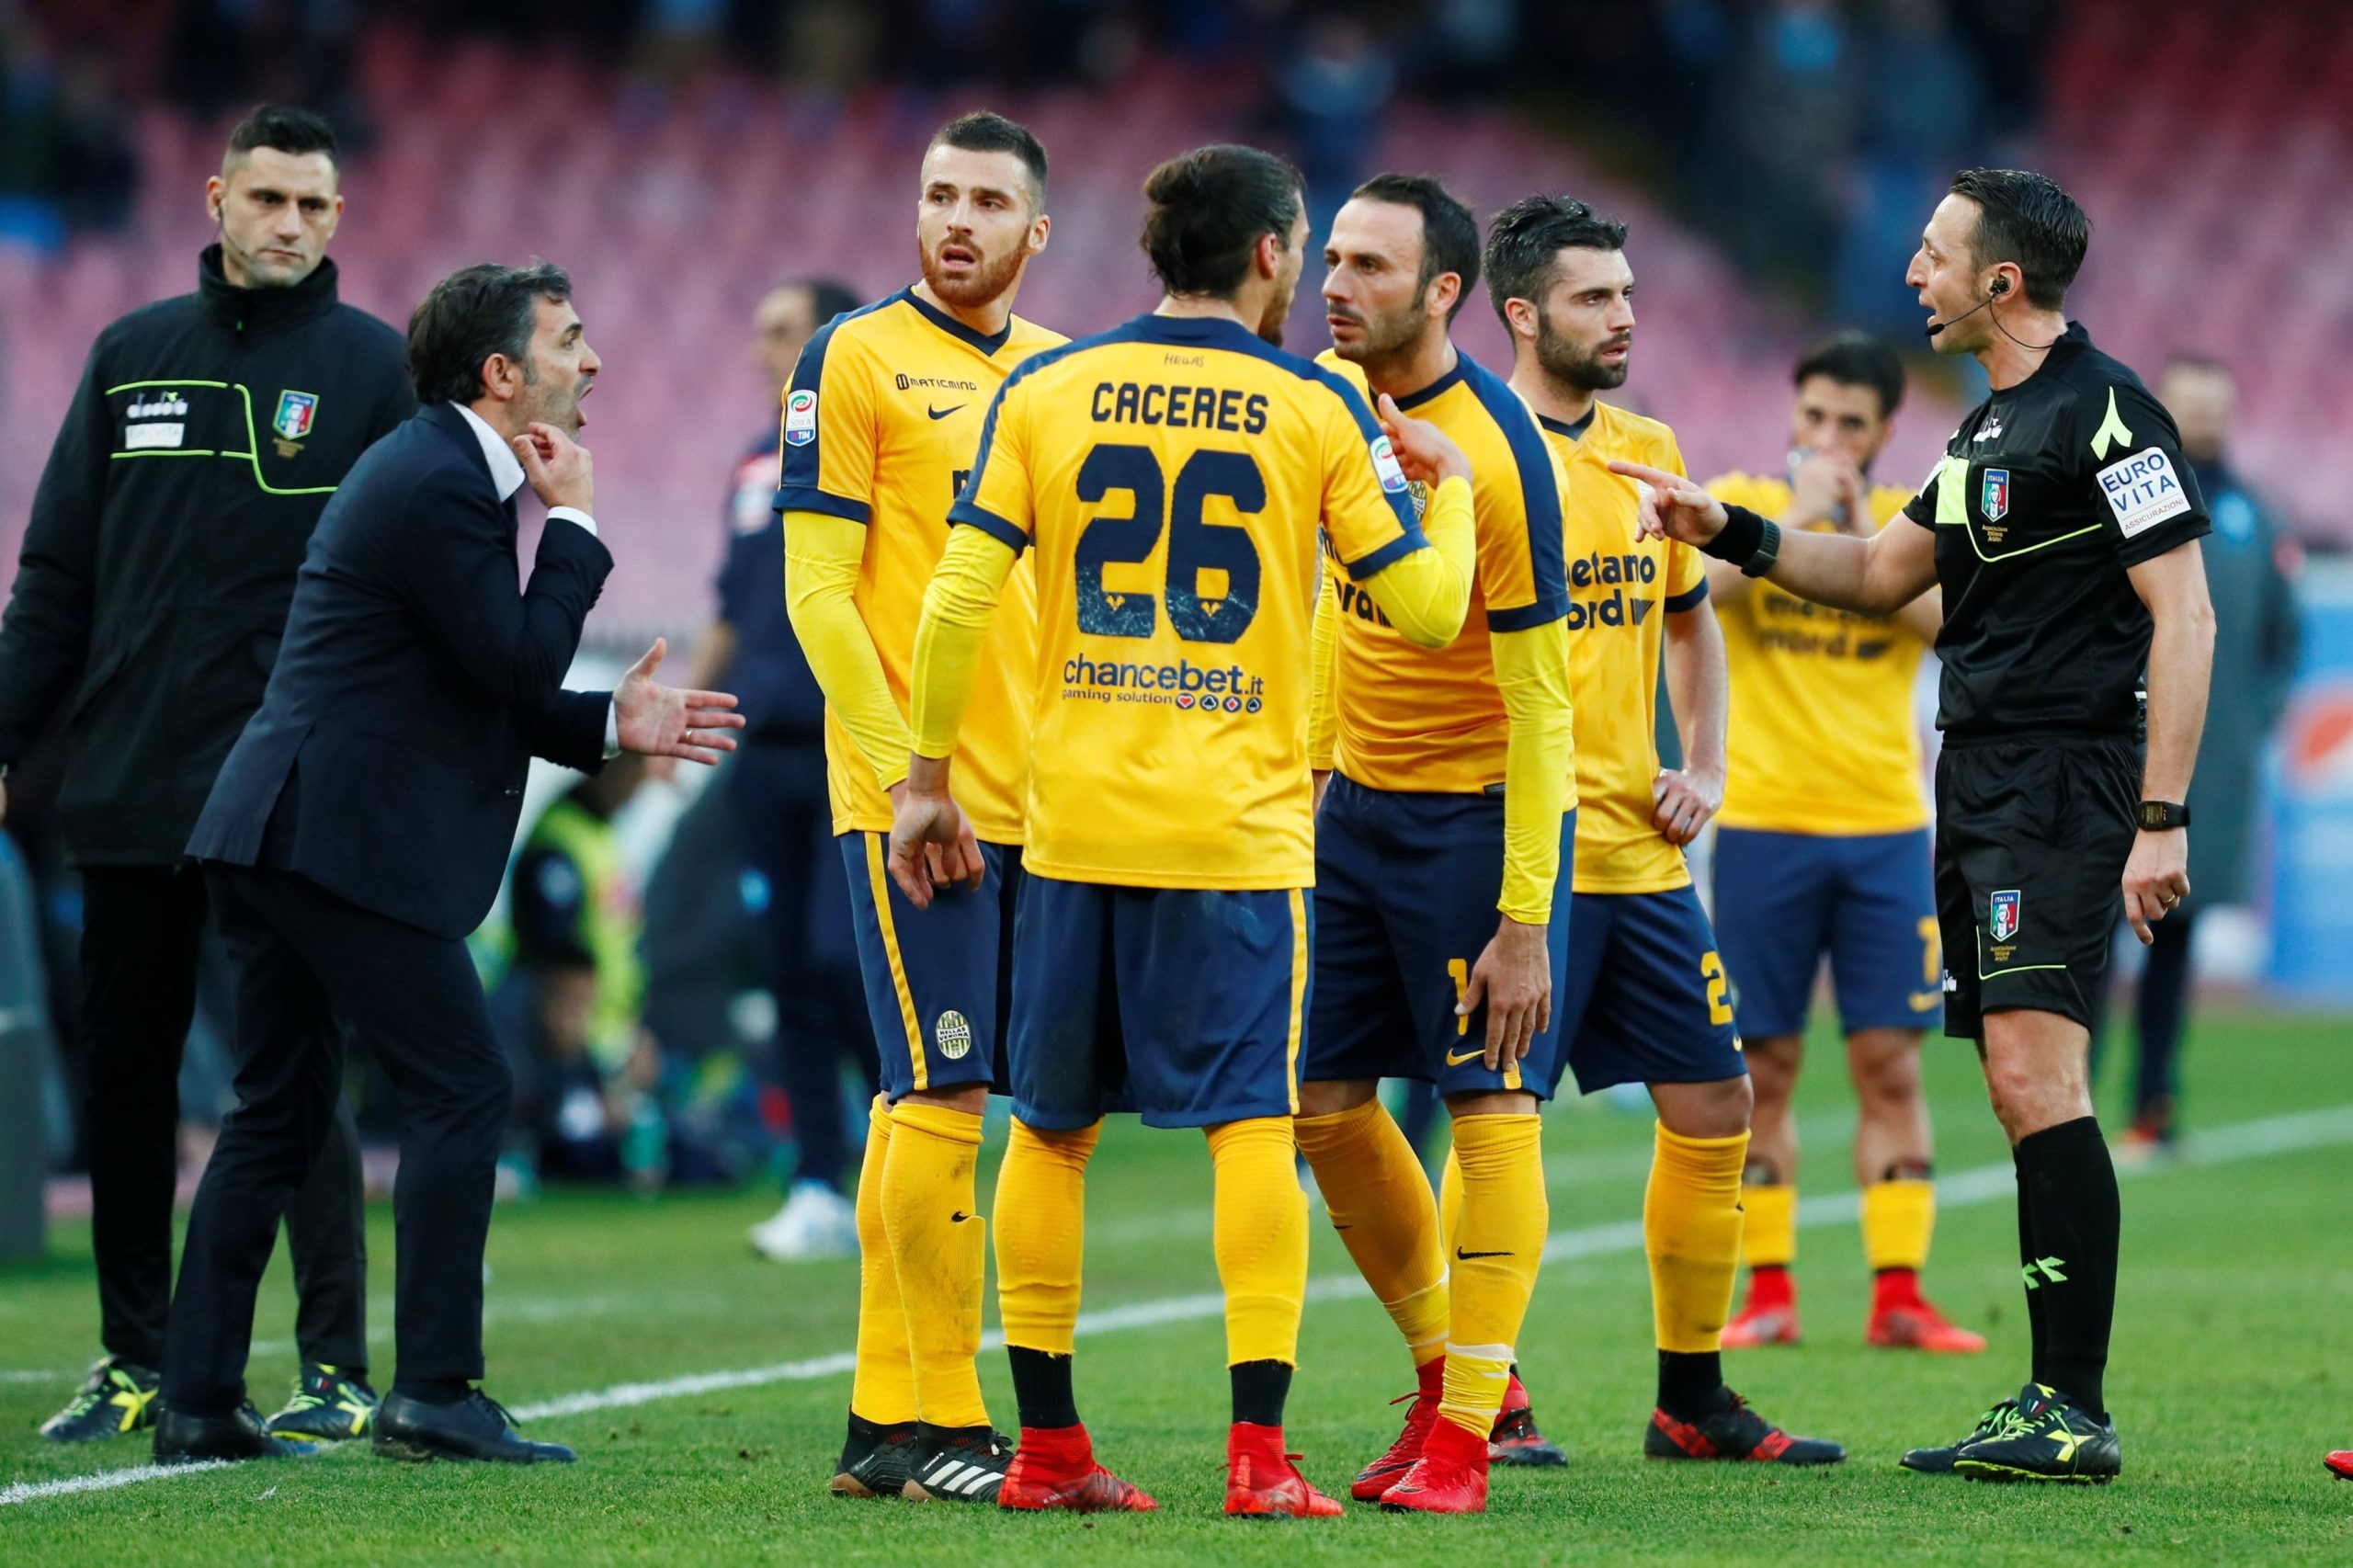 Nhận định kèo bóng đá: Hellas Verona vs Parma – 02h45 16/02/2021